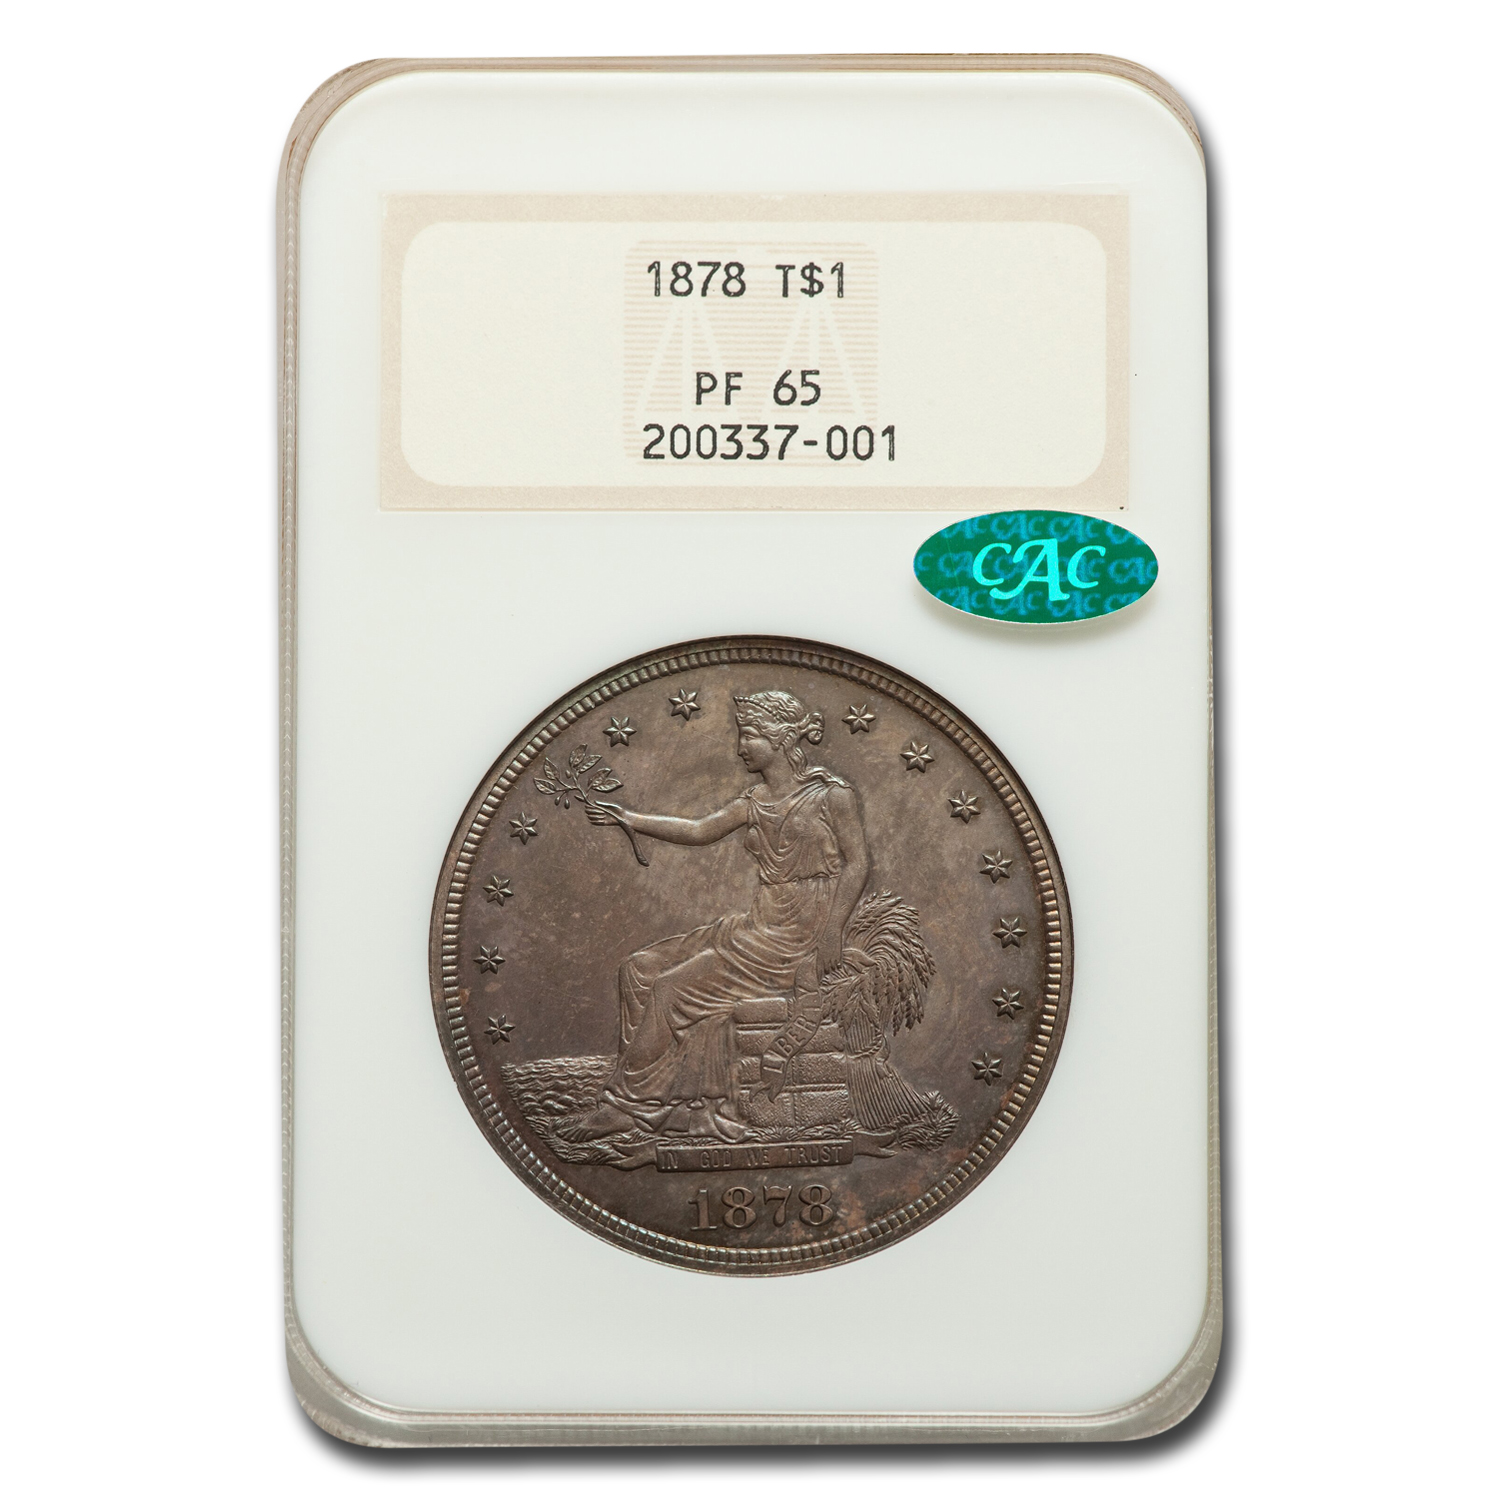 Buy 1878 Trade Dollar PF-65 NGC CAC